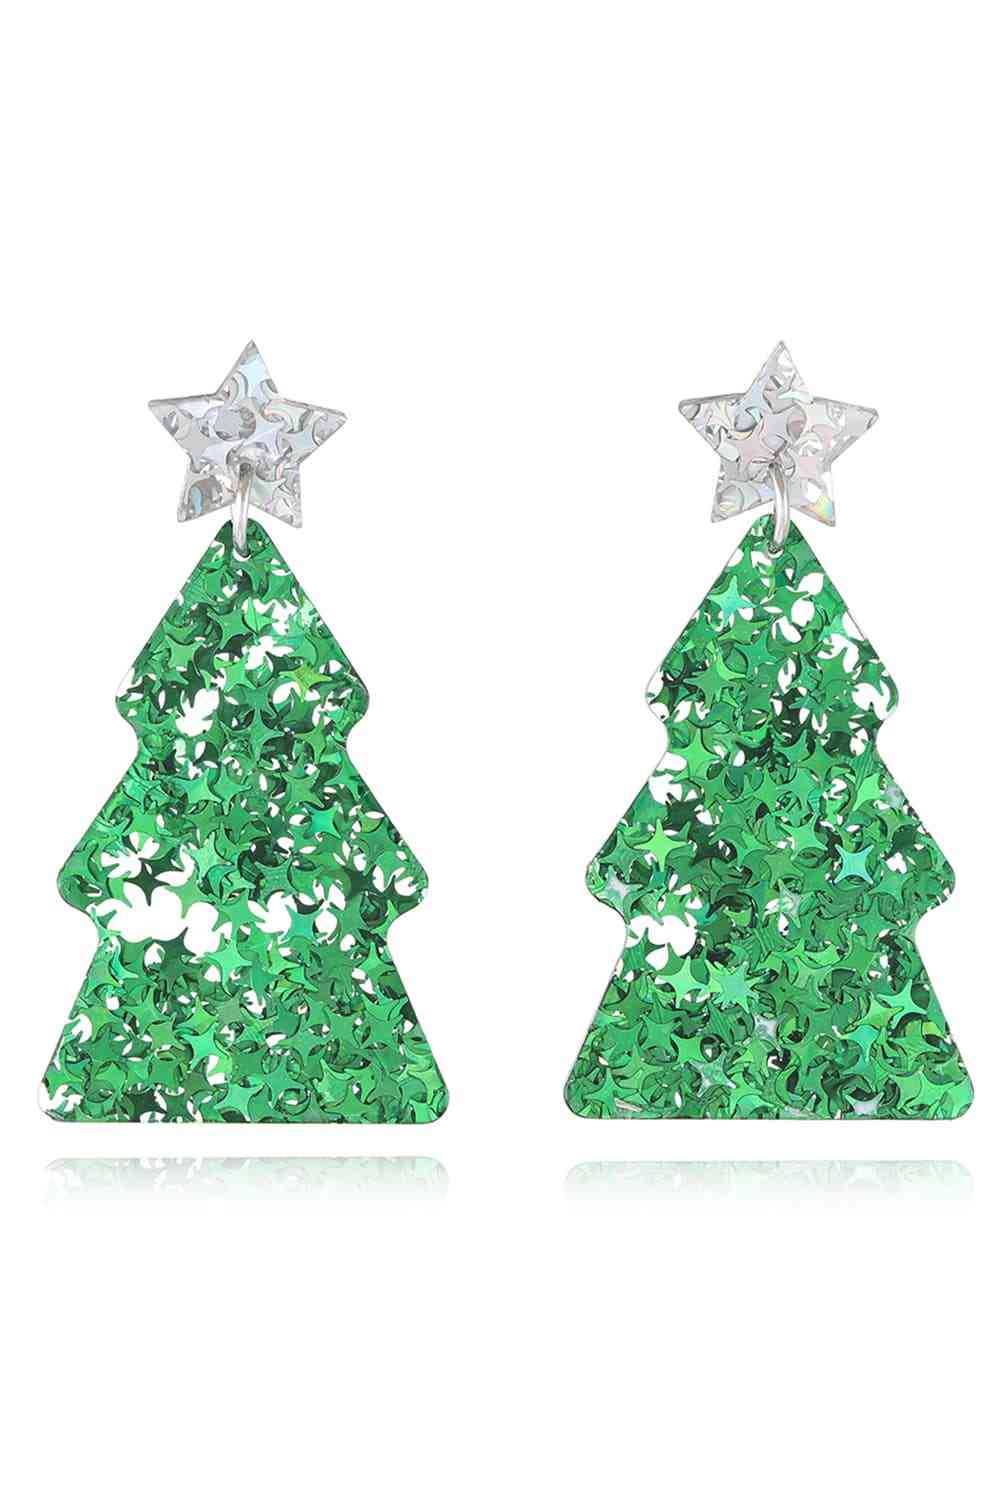 Christmas Tree Acrylic Earrings - Green/Style A / One Size - Women’s Jewelry - Earrings - 10 - 2024